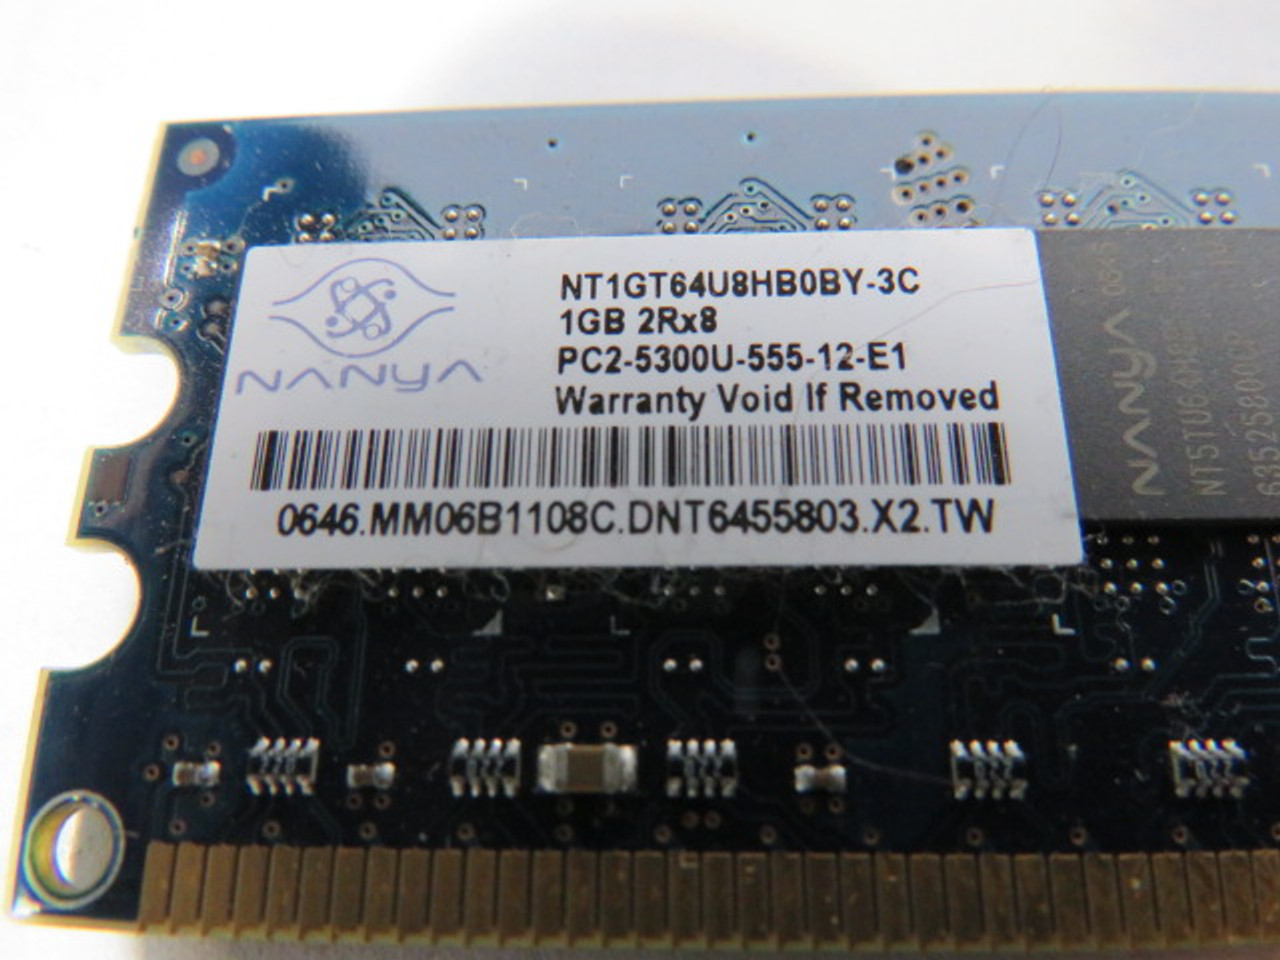 Nanya NT1GT64U8HBOBY-3C DDR2 RAM 1GB 2Rx8 USED